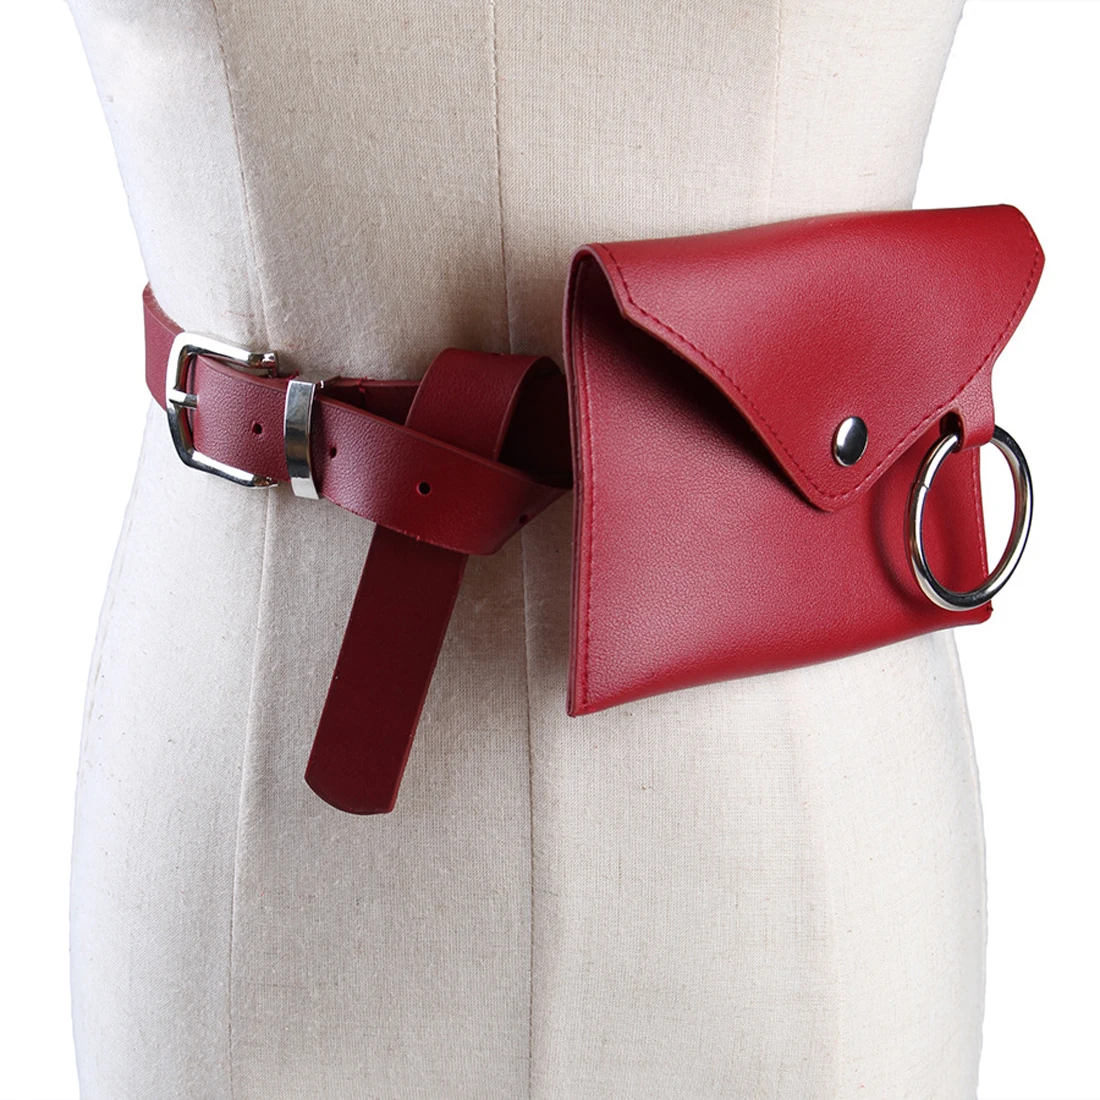 Emarald модная женская Повседневная поясная сумка, поясная сумка для телефона, сумка для ключей, поясная сумка, поясная сумка, мини сумка из искусственной кожи, поясная сумка для телефона - Цвет: Красный